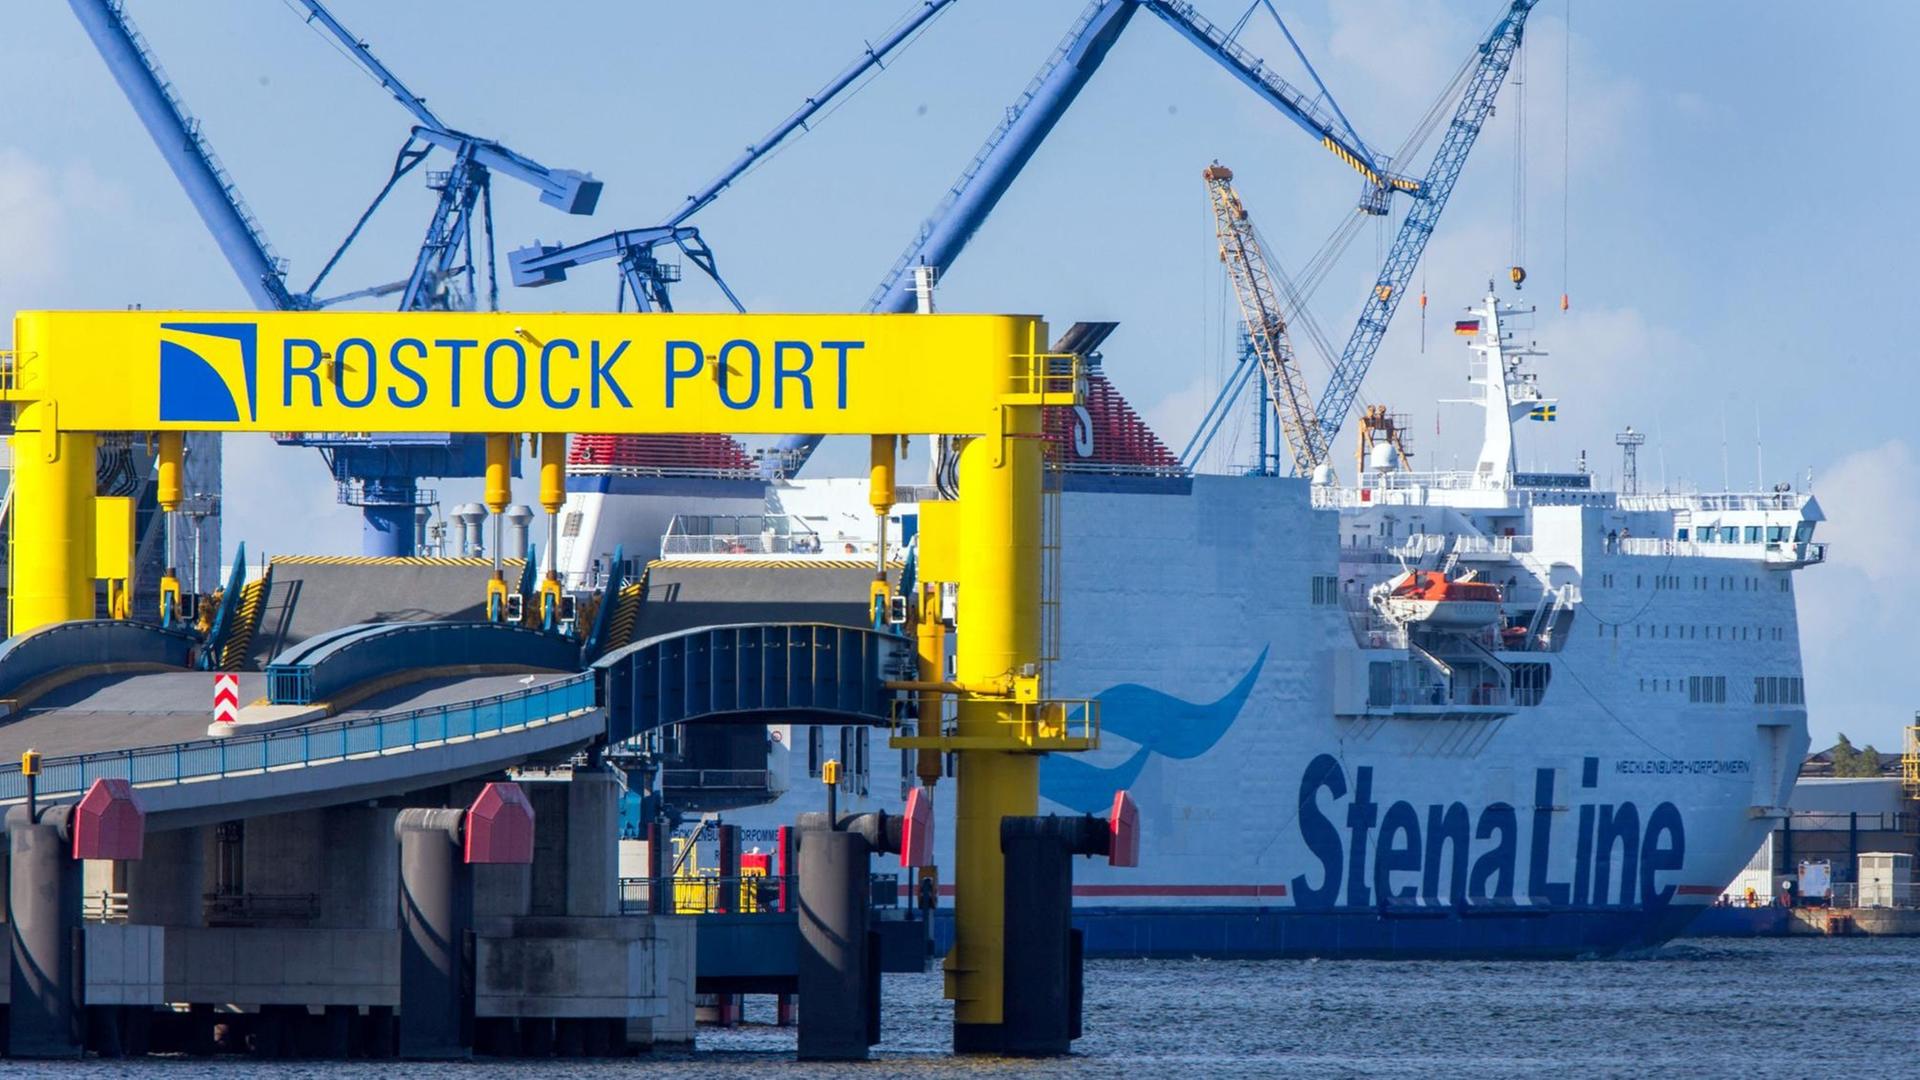 Das Fährschiff "Mecklenburg-Vorpommern" der Reederei Stena Line verlässt am 10.09.2015 den Fährhafen von Rostock (Mecklenburg-Vorpommern).